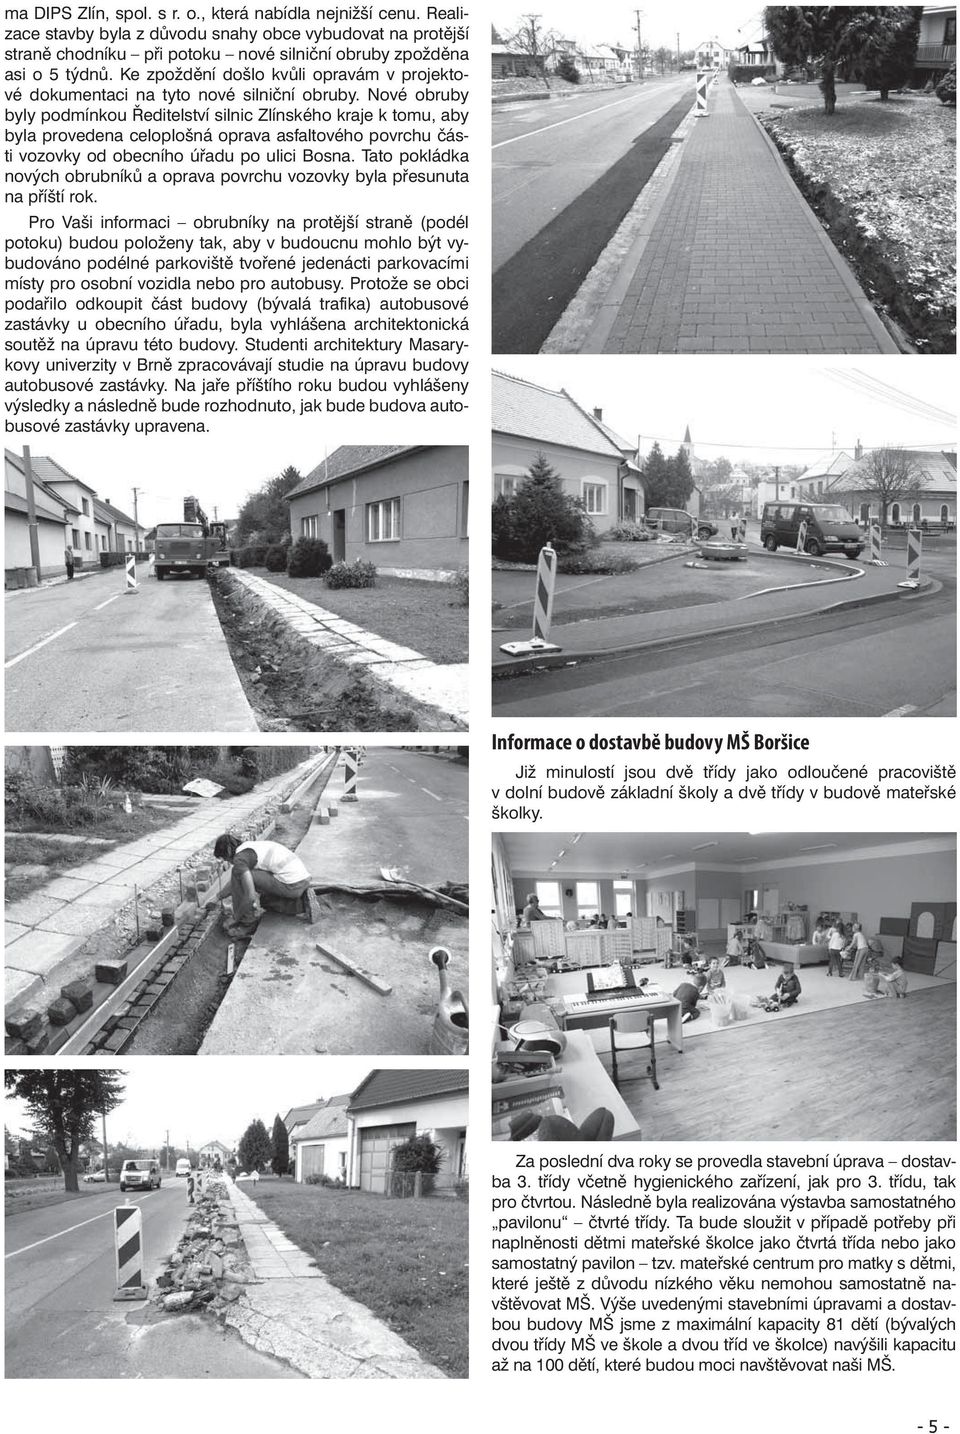 Nové obruby byly podmínkou Ředitelství silnic Zlínského kraje k tomu, aby byla provedena celoplošná oprava asfaltového povrchu části vozovky od obecního úřadu po ulici Bosna.